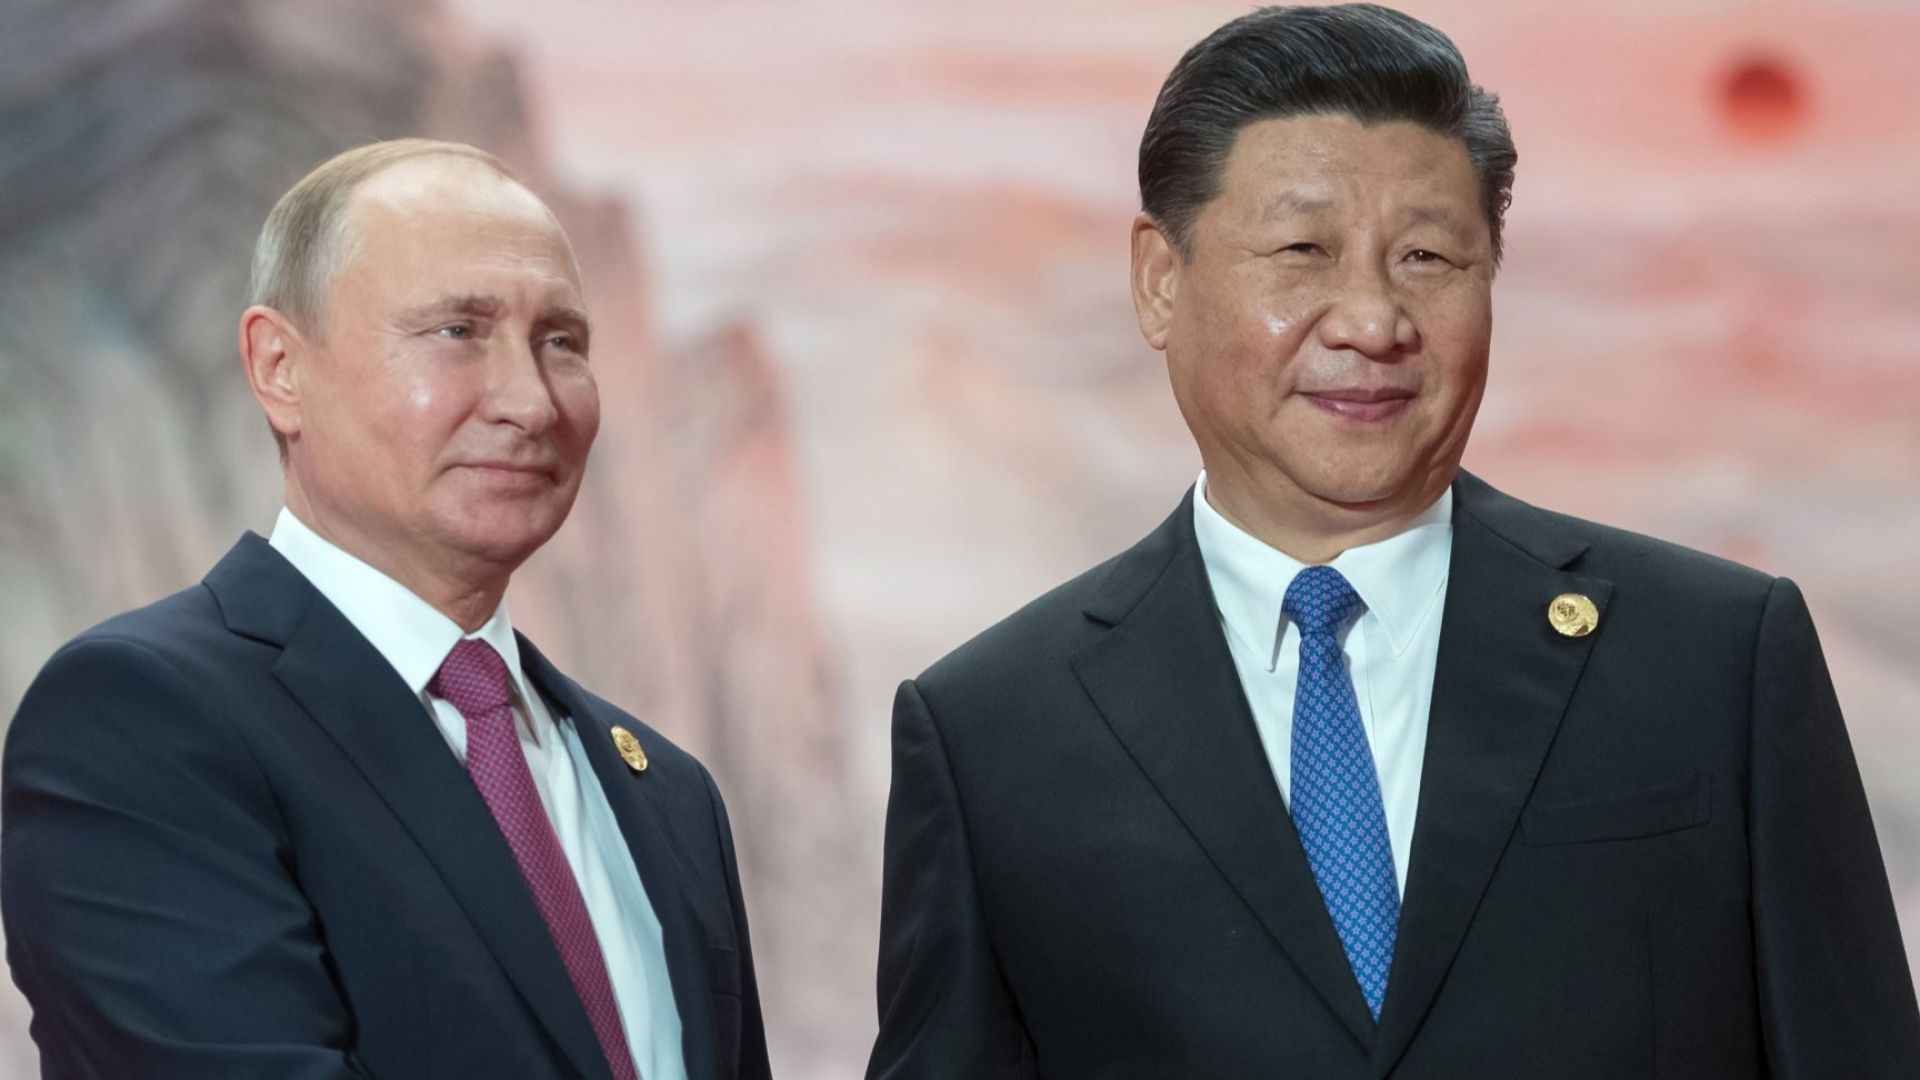 Русия и Китай готвят проект за голямо Евразийско партньорство